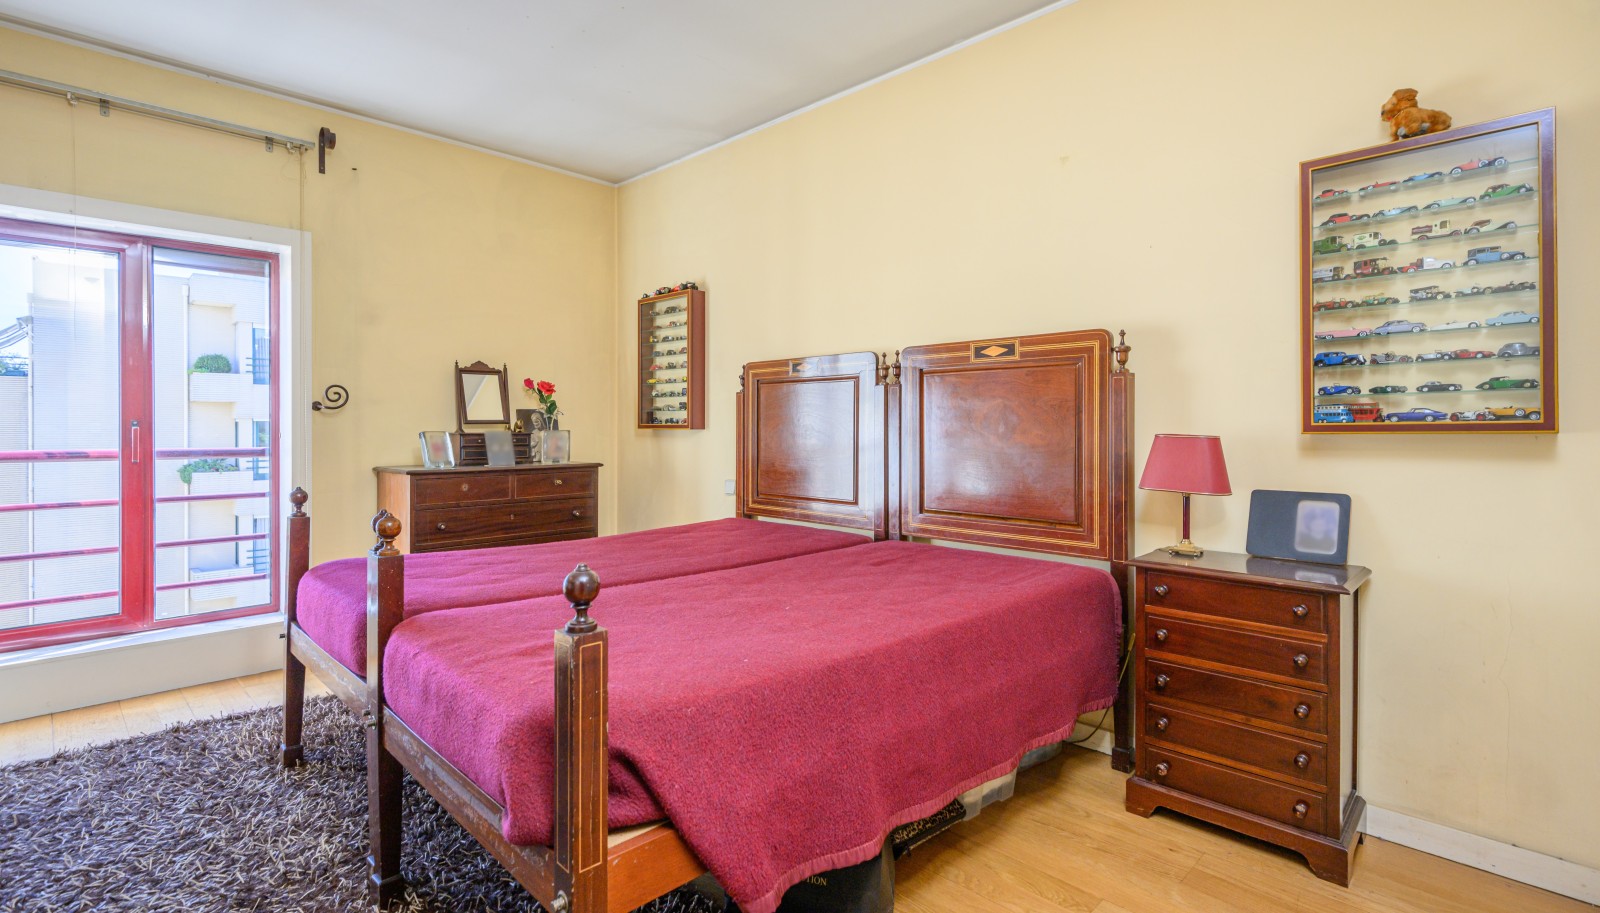 Appartement duplex de 4 chambres à coucher, à vendre, à Ramalde, Porto, Portugal_235519